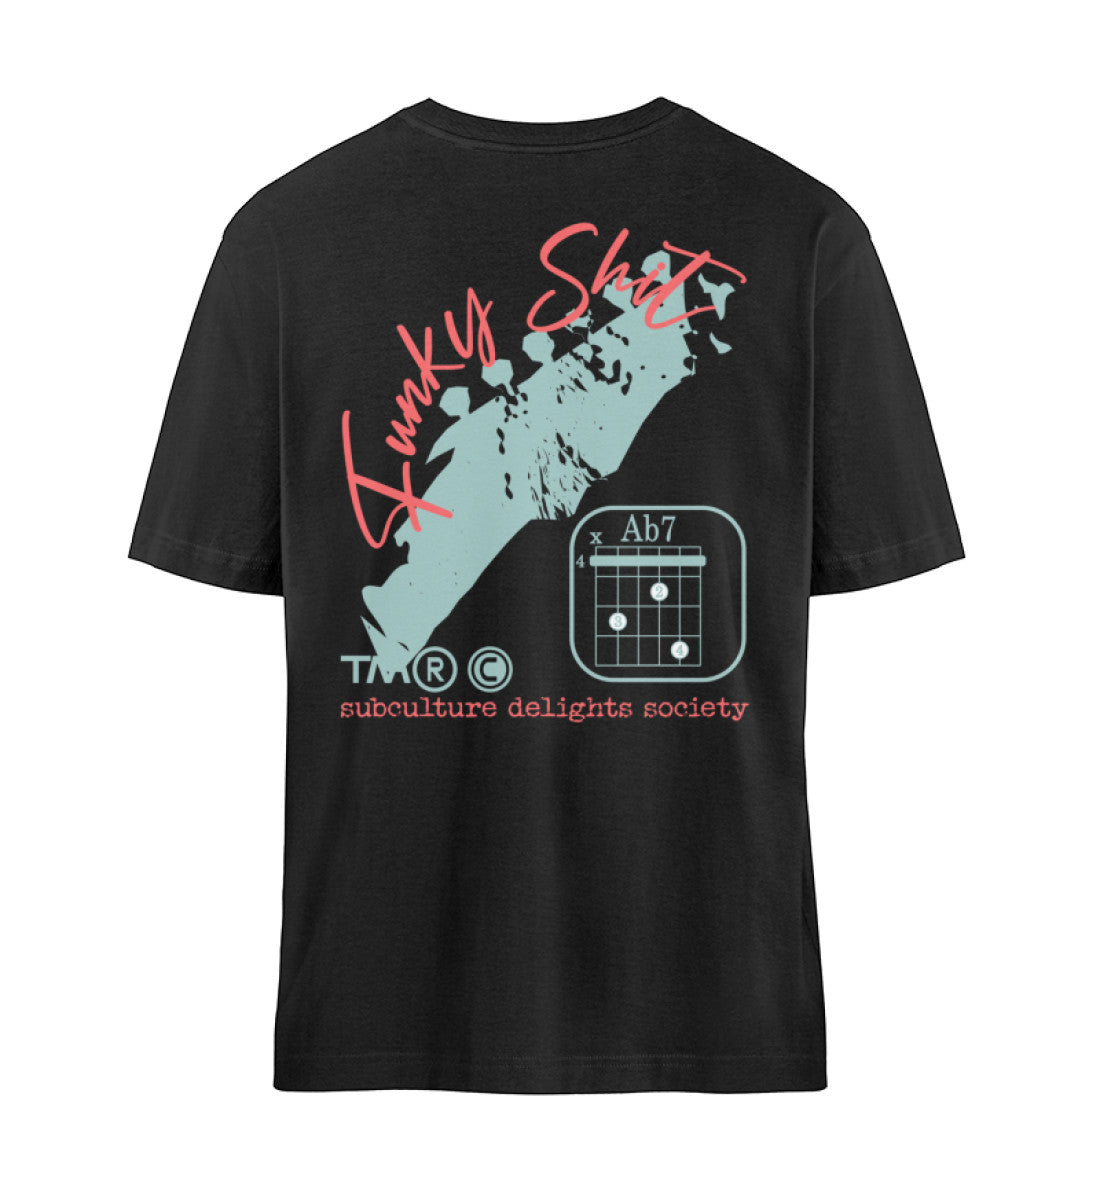 Schwarzes T-Shirt Unisex Relaxed Fit für Frauen und Männer bedruckt mit dem Design der Roger Rockawoo Clothing Kollektion Guitar Funky Shit